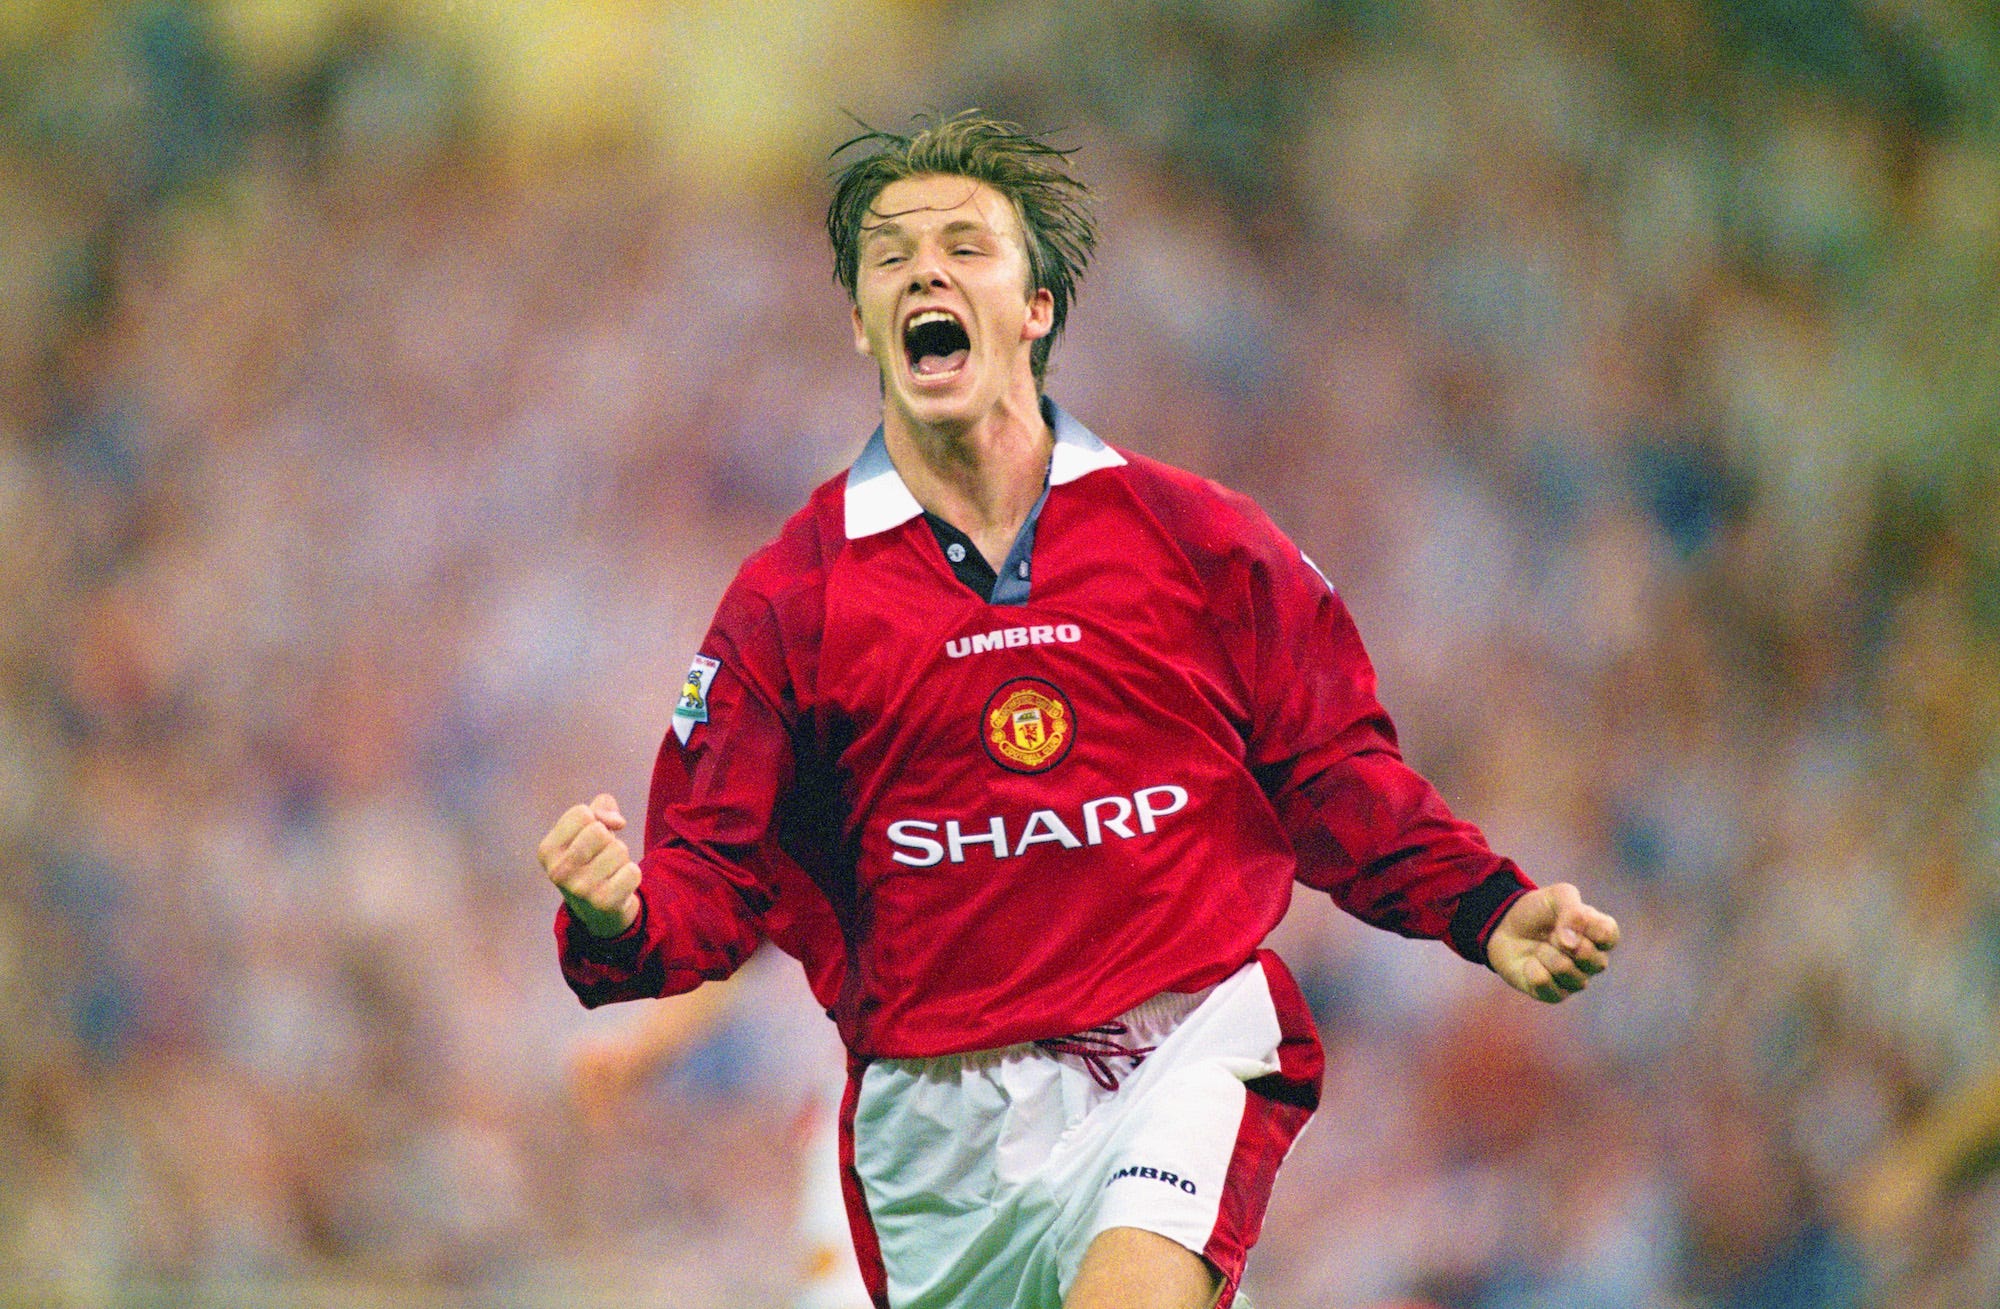 David Beckham von Manchester United feiert, nachdem er am 11. August 1996 im Wembley-Stadion in London, England, das dritte Tor beim FA Charity Shield 1996 zwischen Manchester United und Newcastle United erzielt hat.